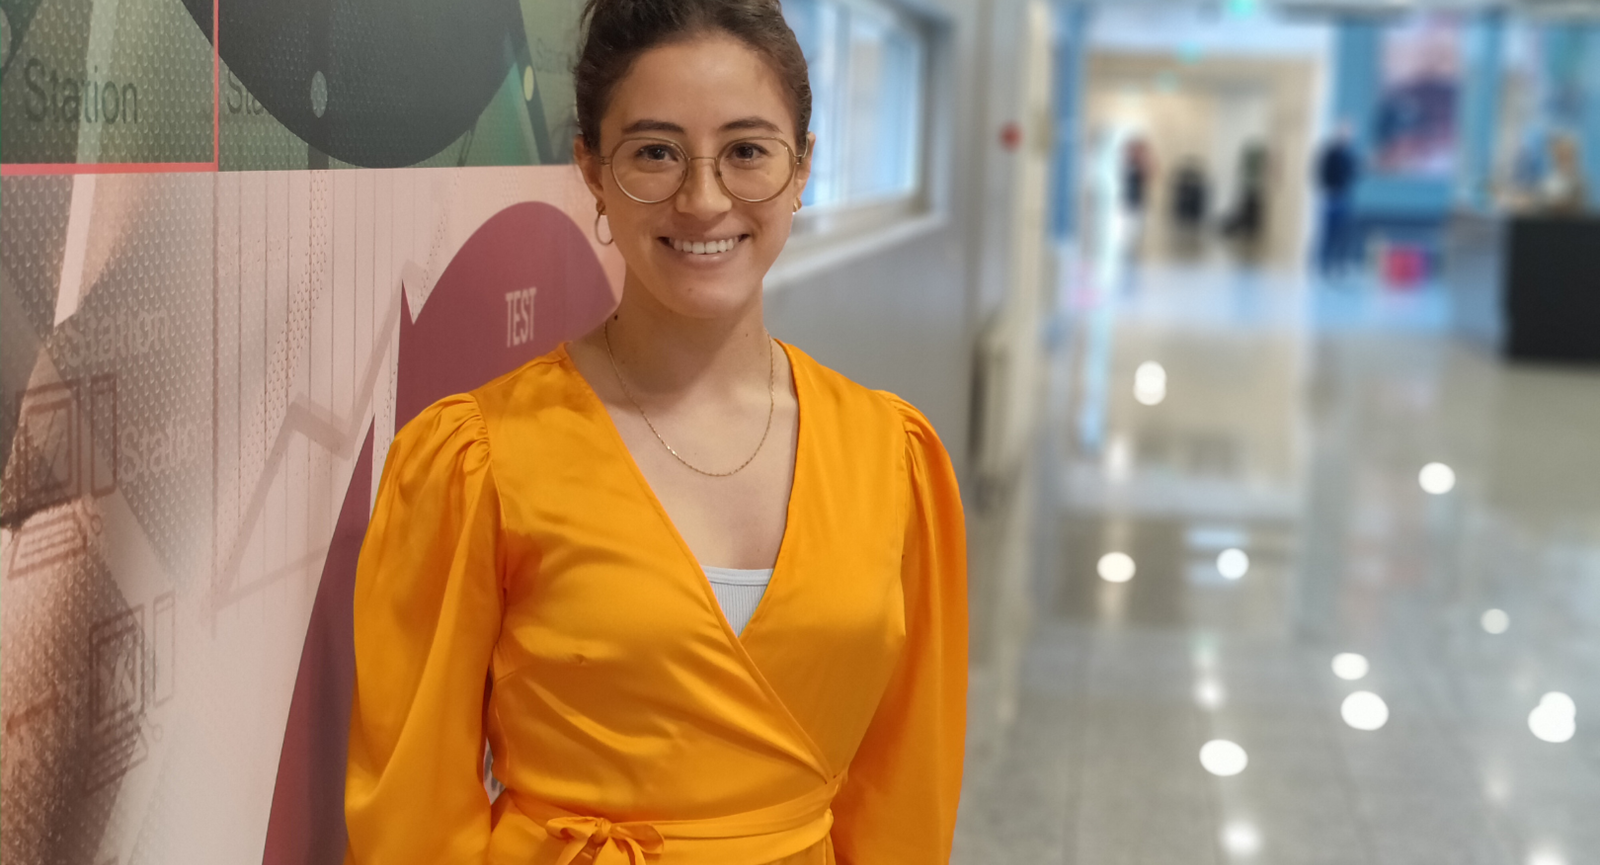 Nyuddannet optometrist Nina Nilsson står i sin orange kjole på gangen på Erhvervsakademi Dania